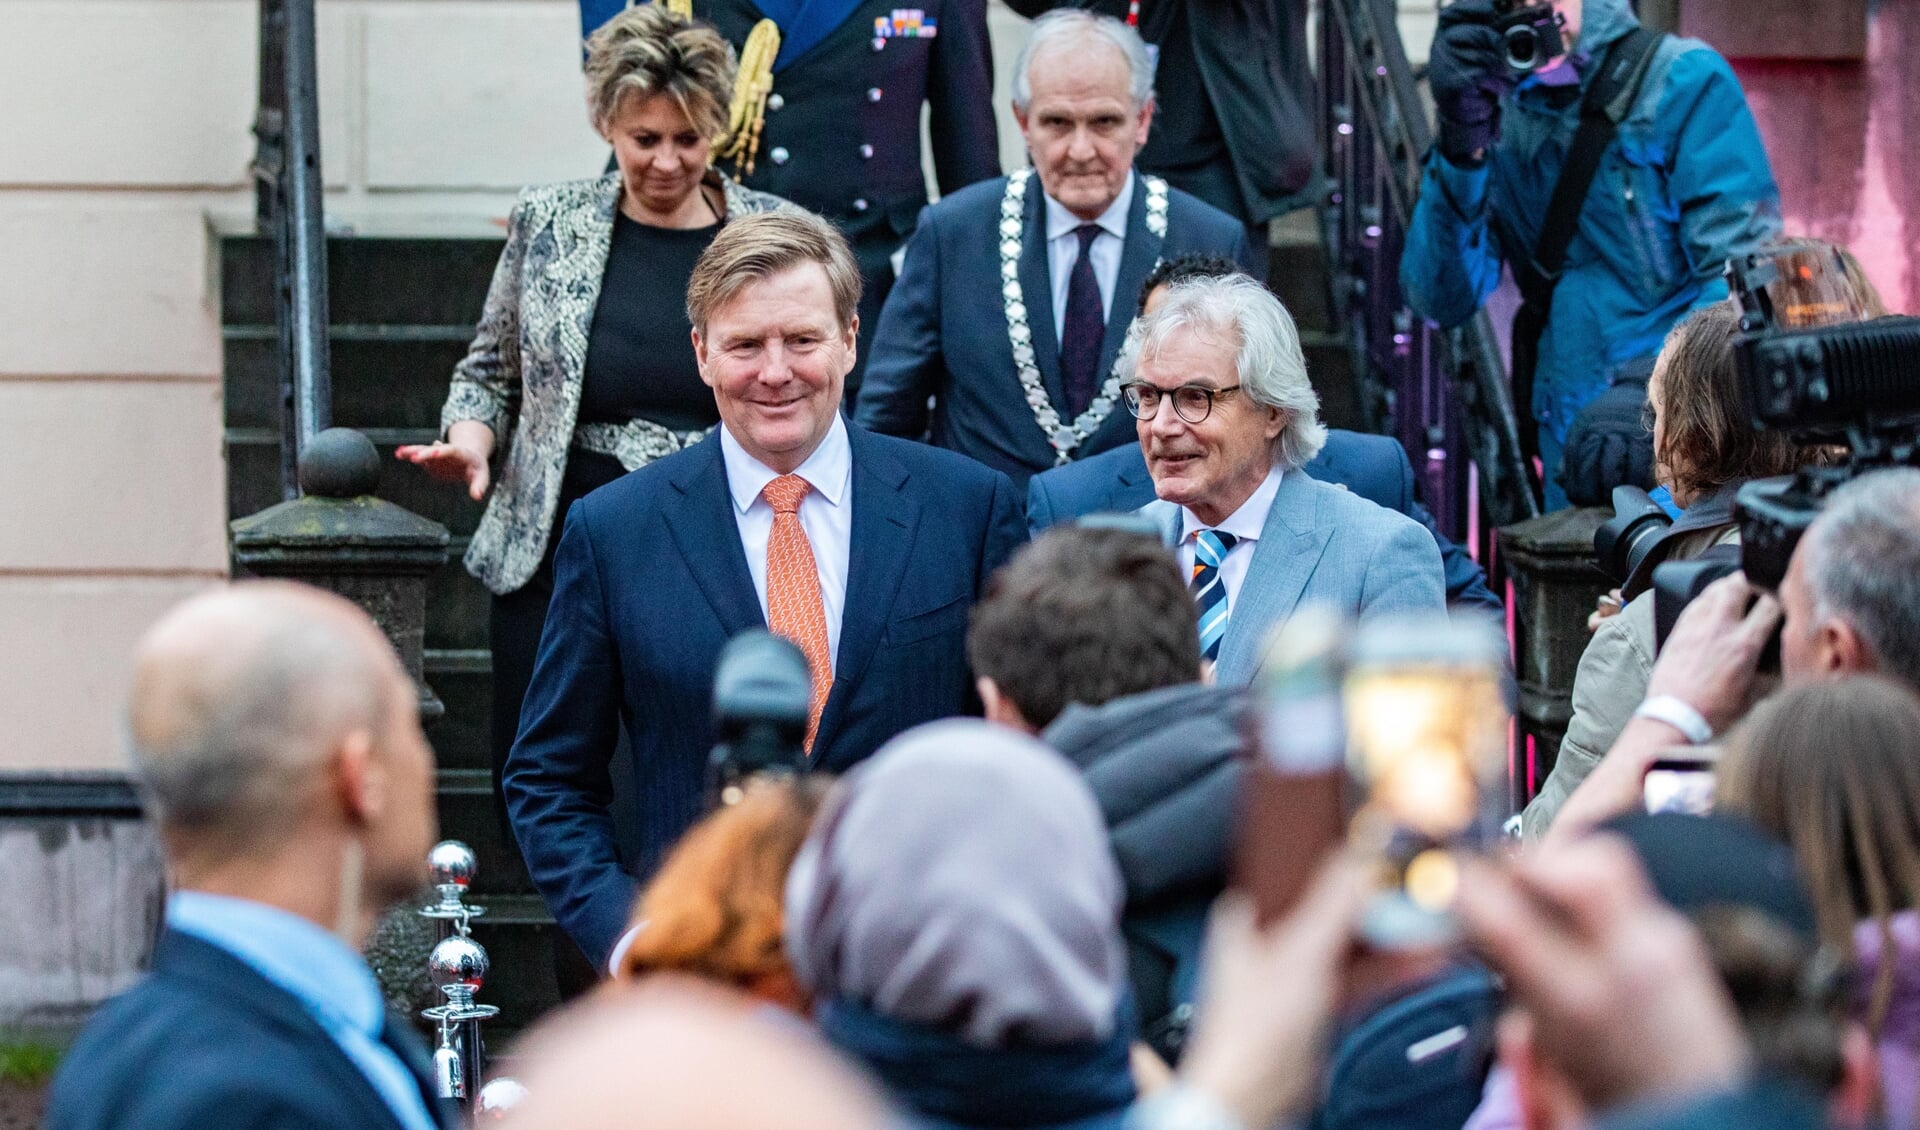 De koning - hier nog zonder baard - bezocht in 2019 ook de regio. Toen was hij in Hilversum te gast.